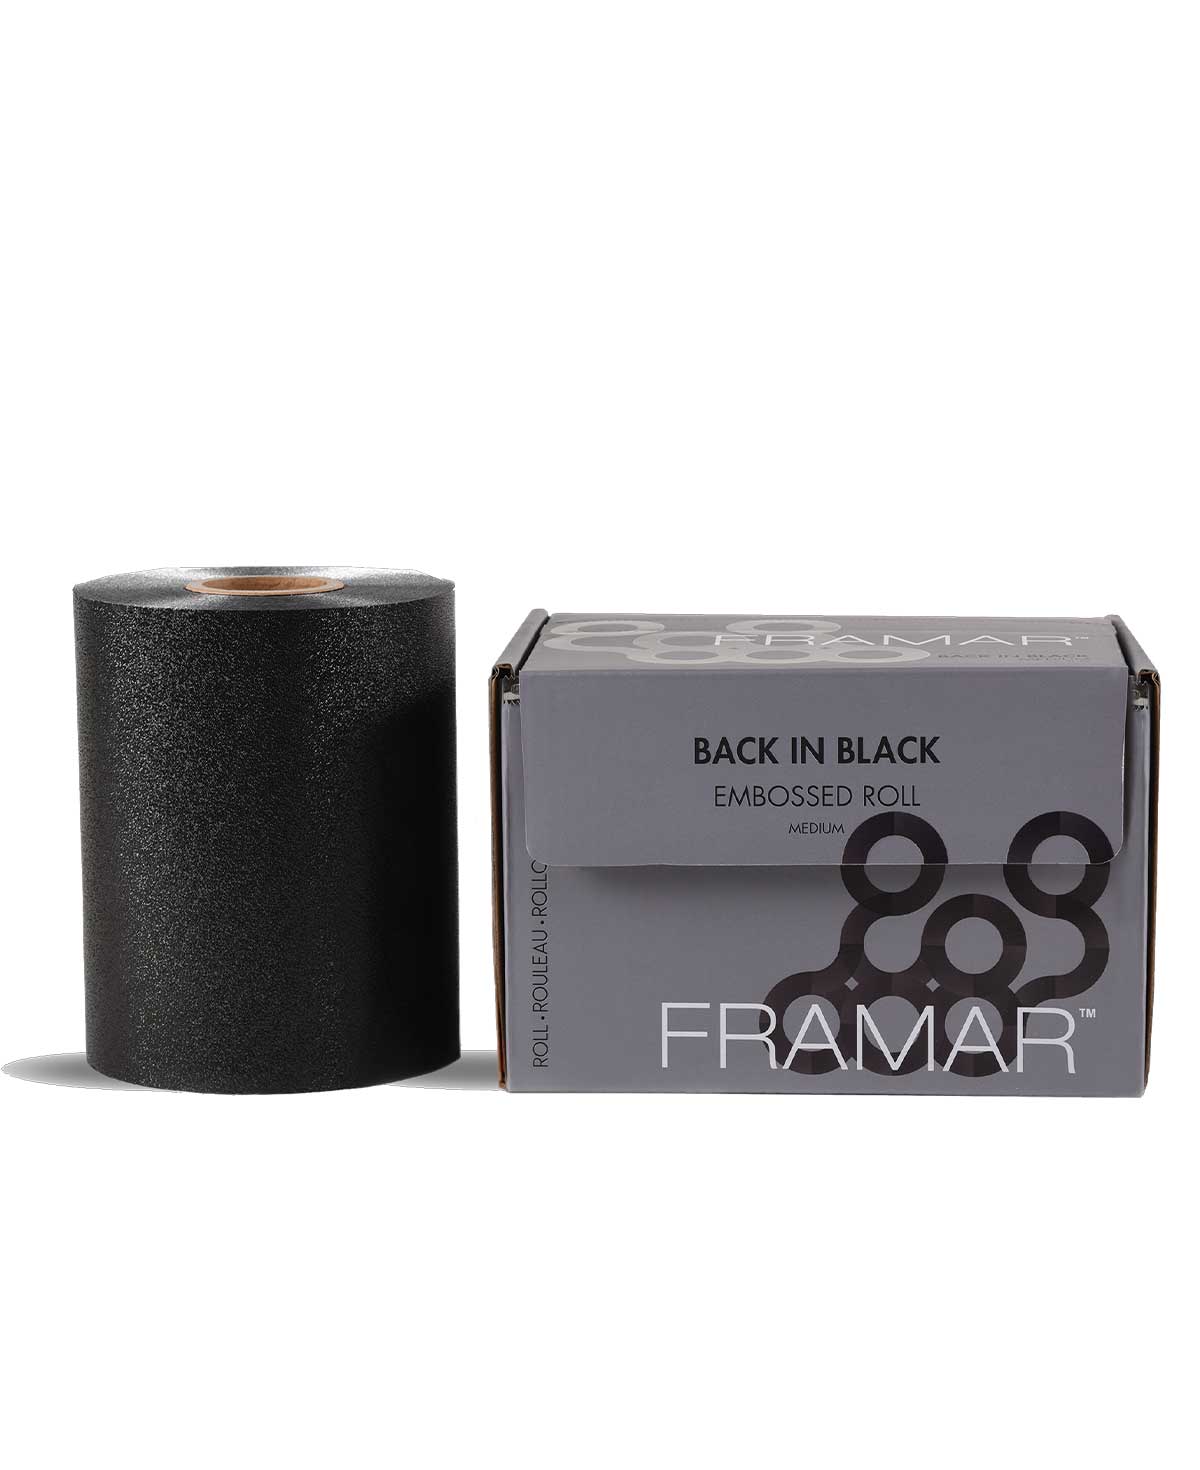 Framar Embossed Roll Medium Back in Black 320 ft.